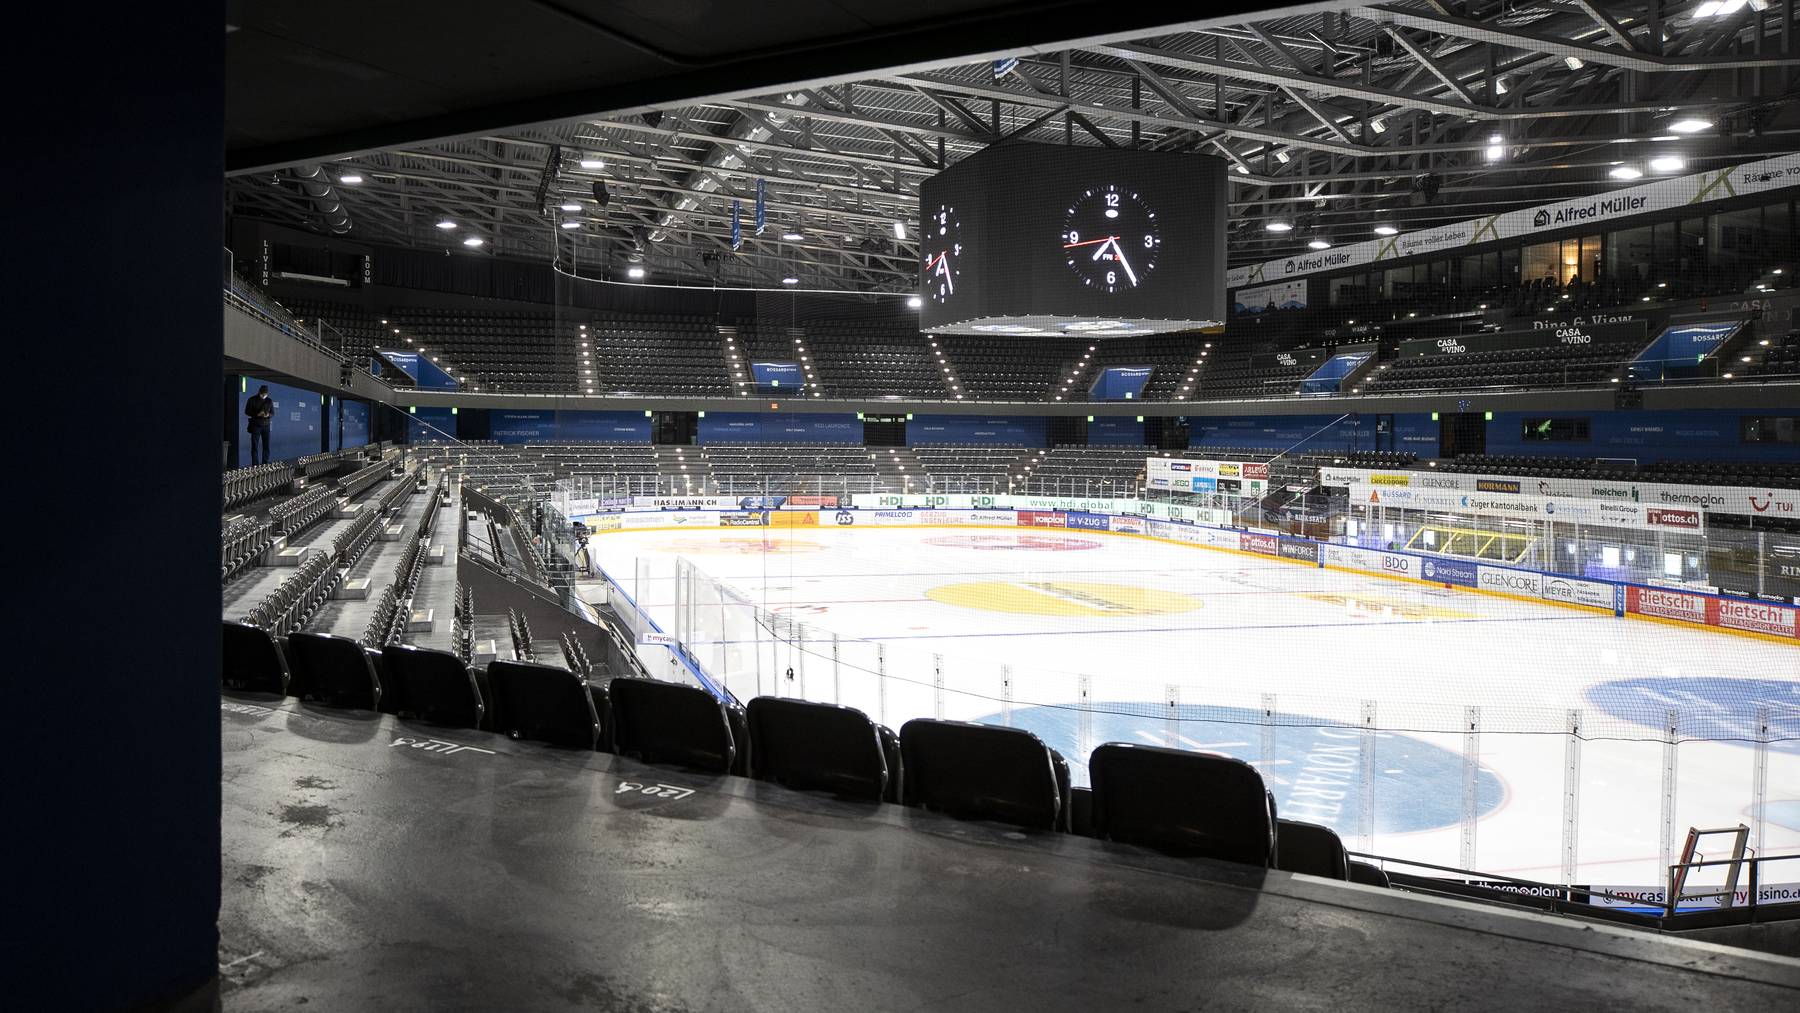 Das leere Eishockey Stadion, die Bossard Arena in Zug, weil das Spiel von heute Abend, EV Zug gegen HC Lugano, abgesagt wurde, aufgenommen am Freitag, 20. November 2020. Grund fuer die Absage war, dass der Gotthard-Tunnel gesperrt war. Fuer die Gaeste aus dem Tessin gab es mit ihrem Teambus auf der Autobahn kein Weiterkommen mehr.